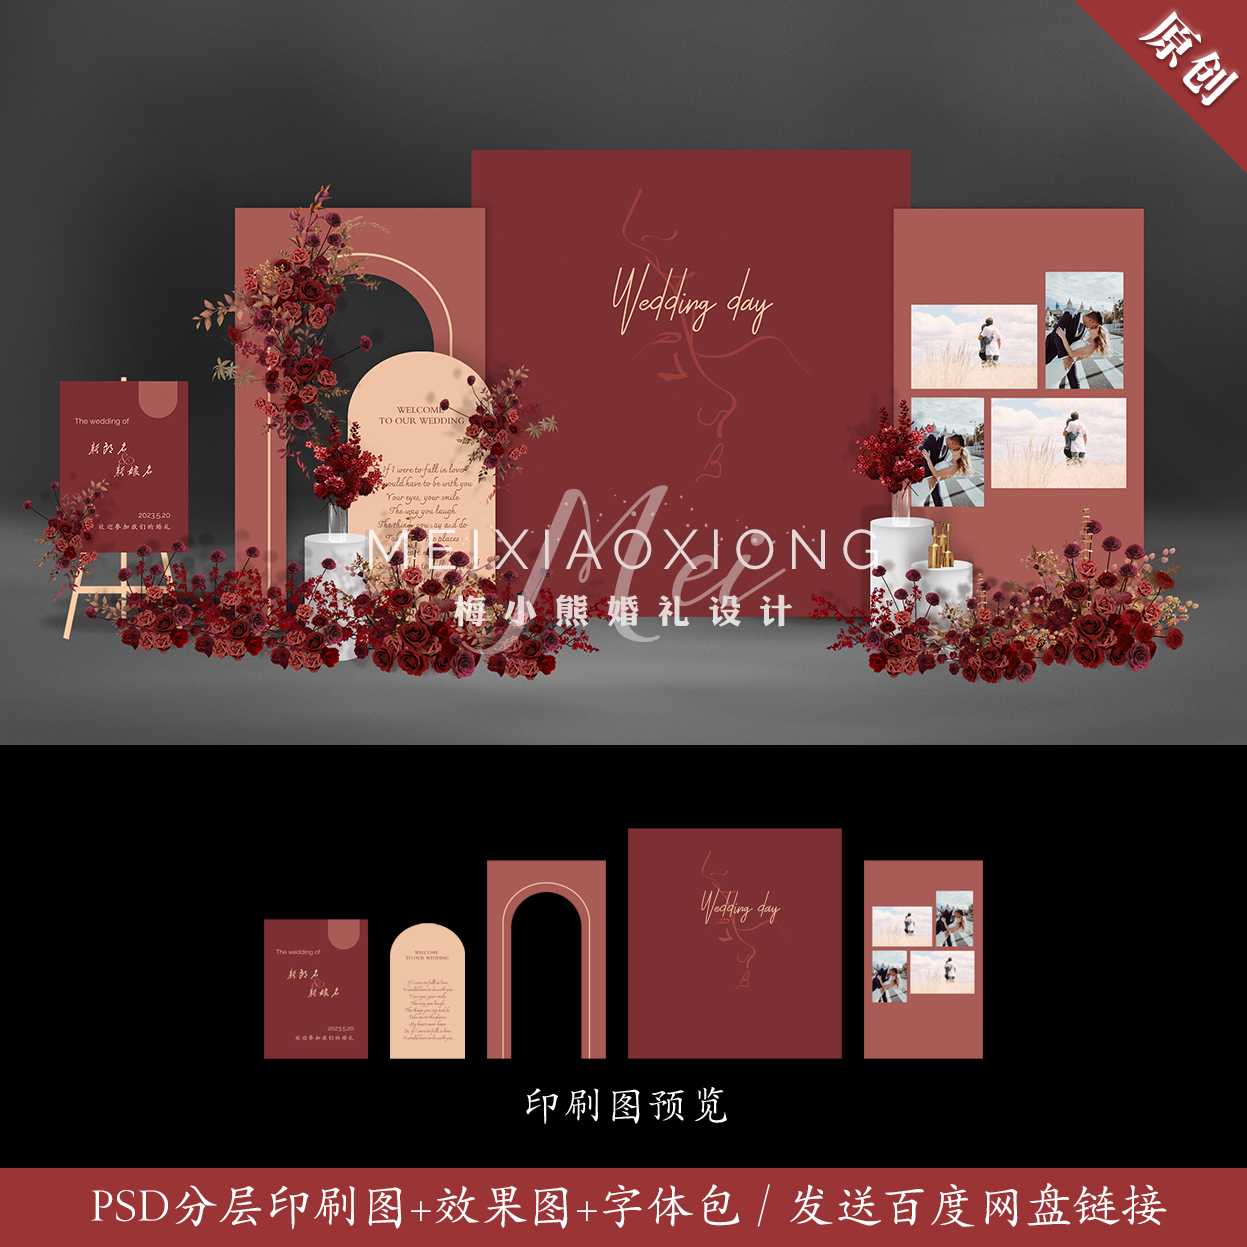 香槟暗红色婚礼设计效果图 结婚迎宾区照片背景墙KT板PSD素材模板